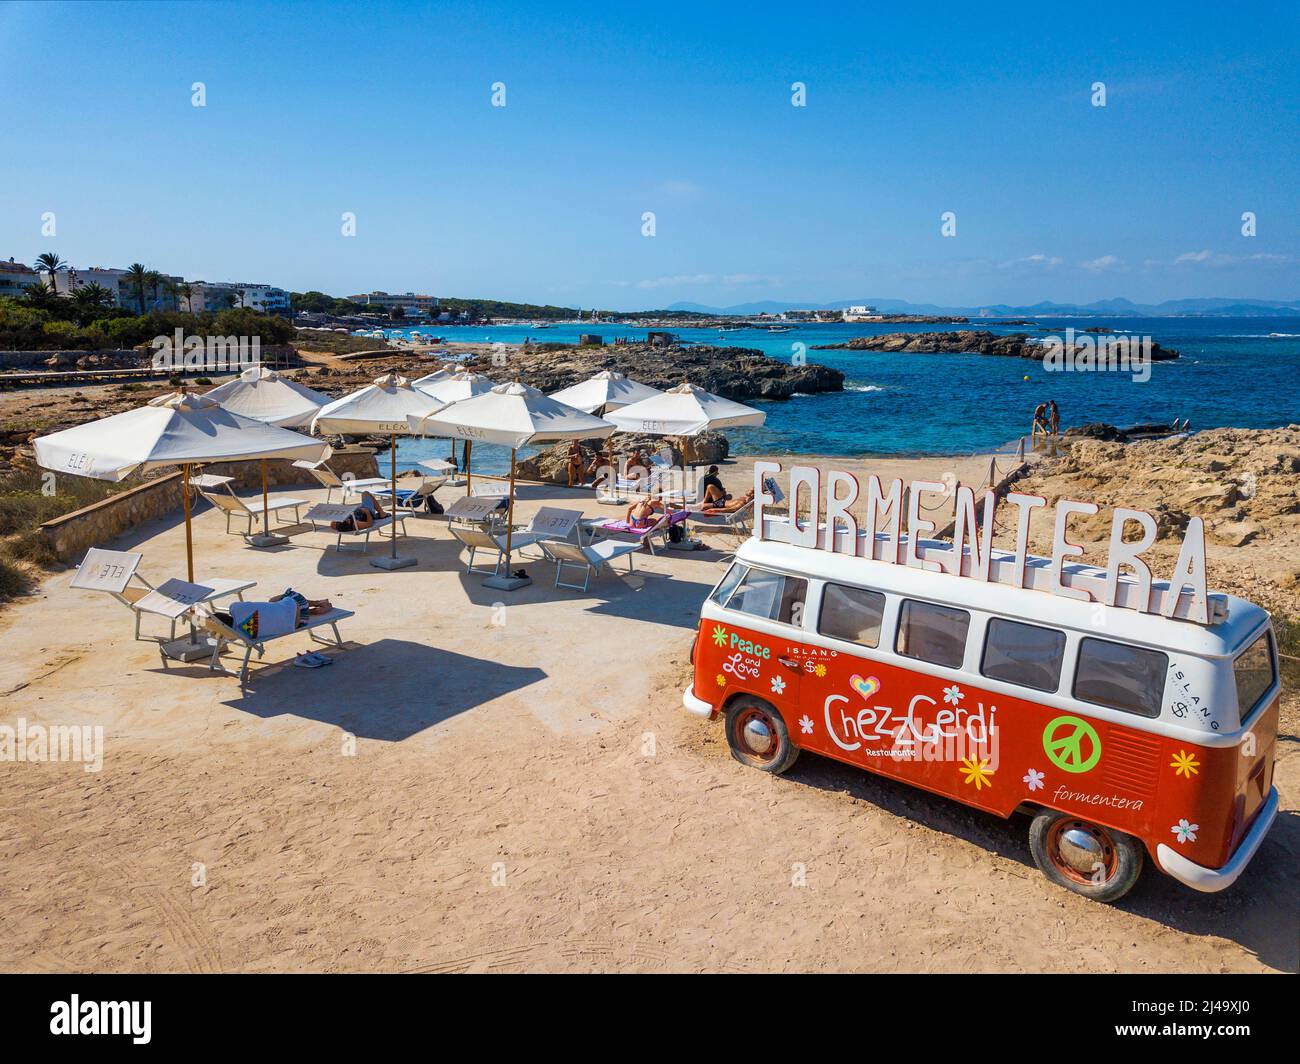 Classic Volkswagen rosso e bianco tipo 2 camper van sulla spiaggia es Pujols, Cheszz Gerdi bar spiaggia ristorante pubblicità, Balearis Isole, Formentera, Spa Foto Stock